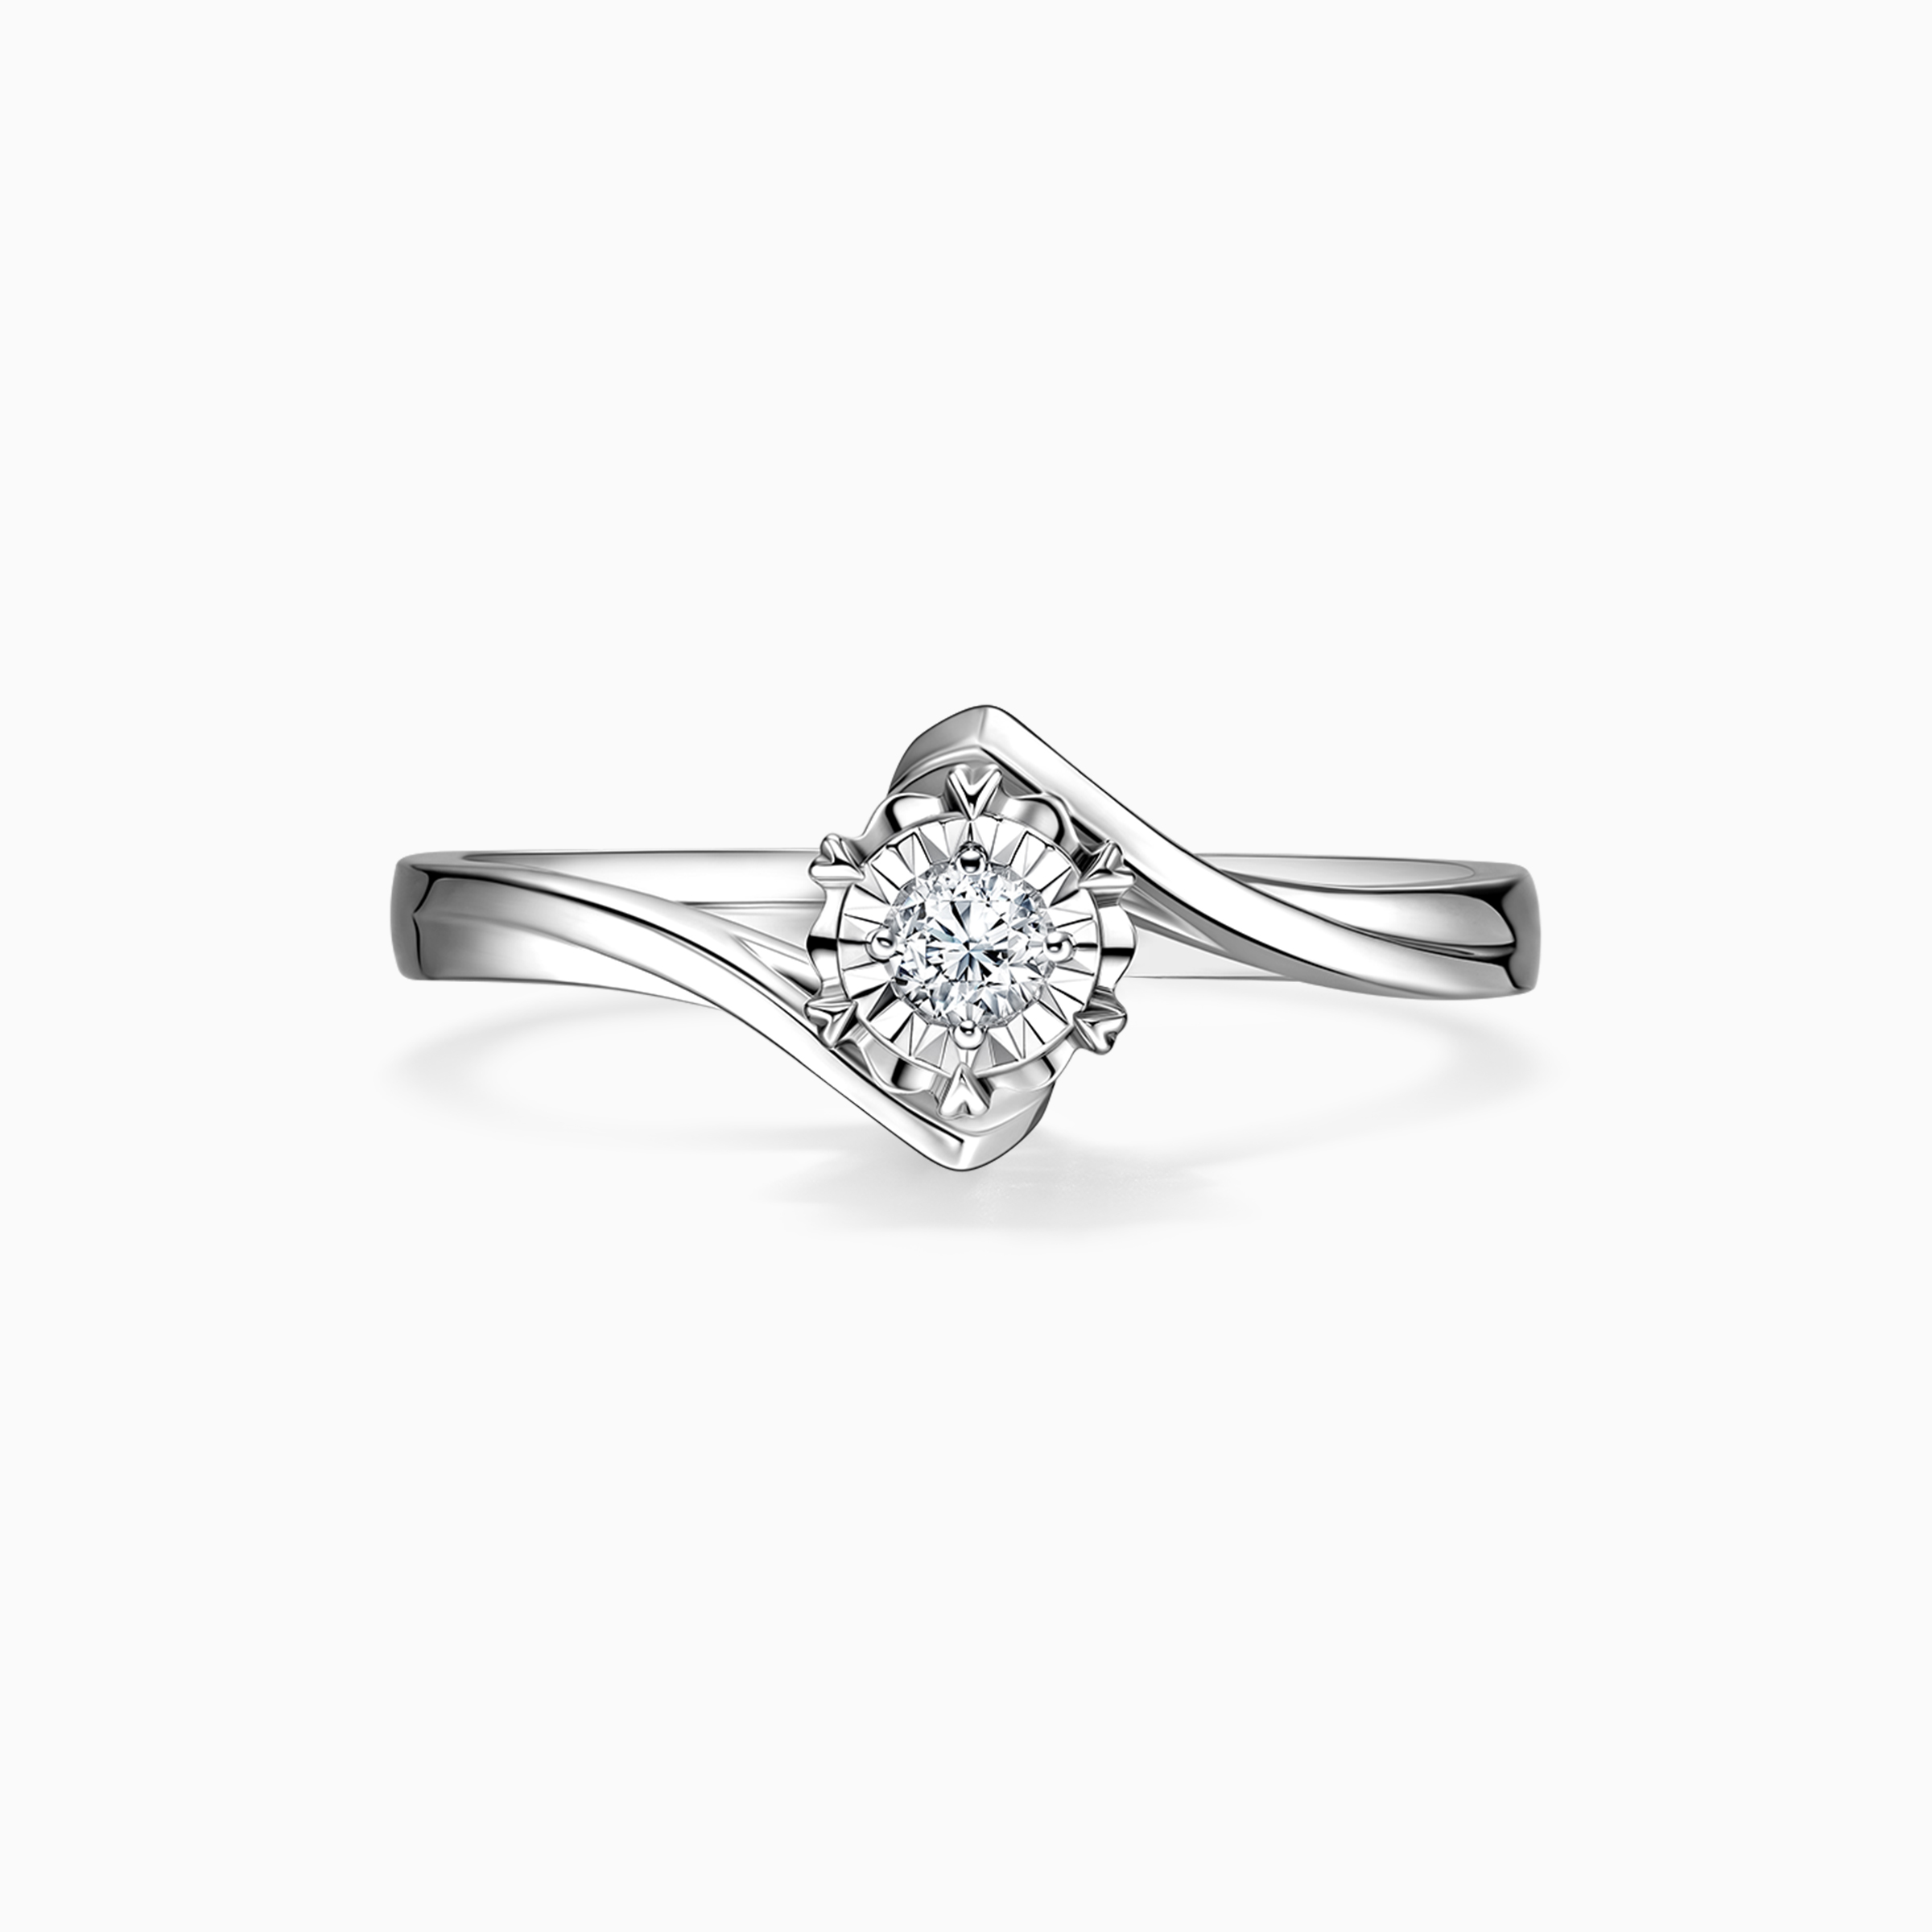 Darry Ring flower diamond promise ring in white gold